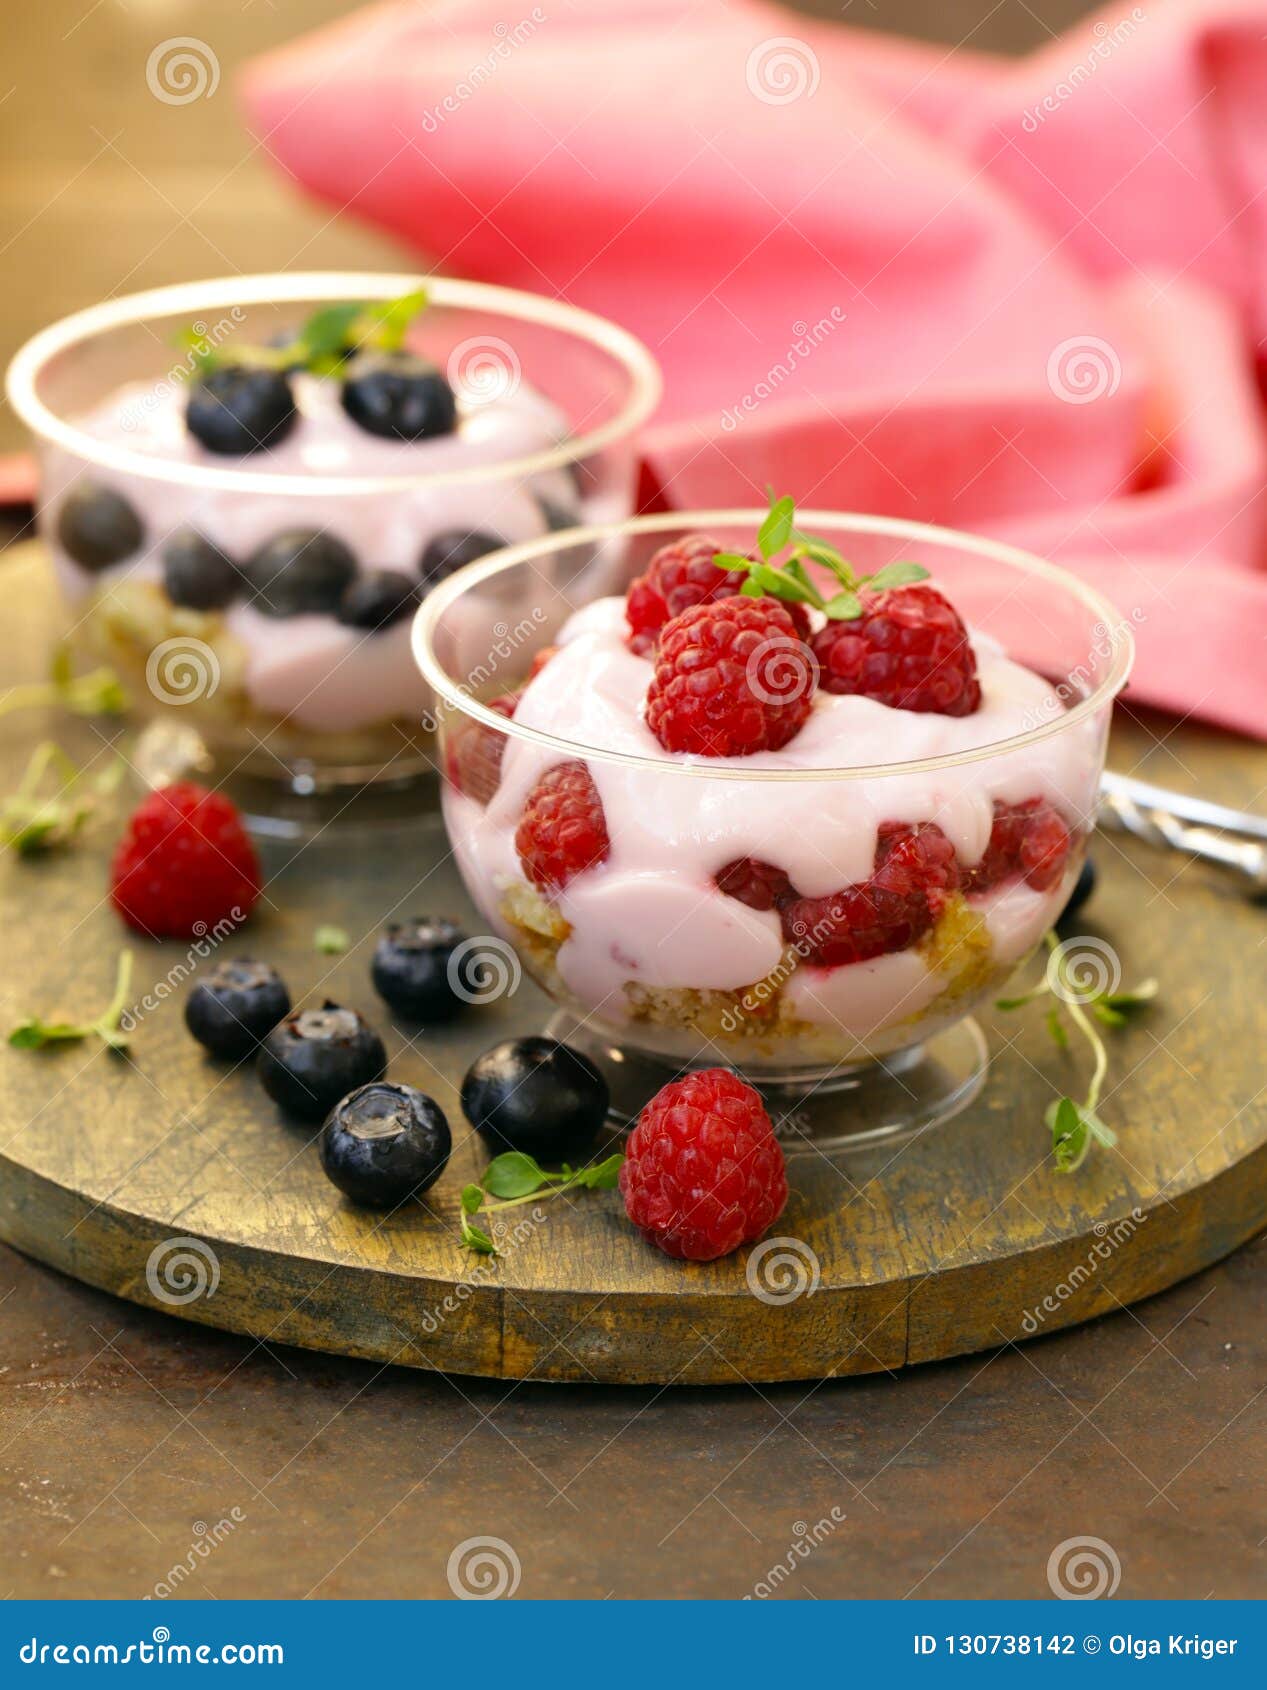 Dessert with Berries and Yogurt Stock Photo - Image of diet, granola ...